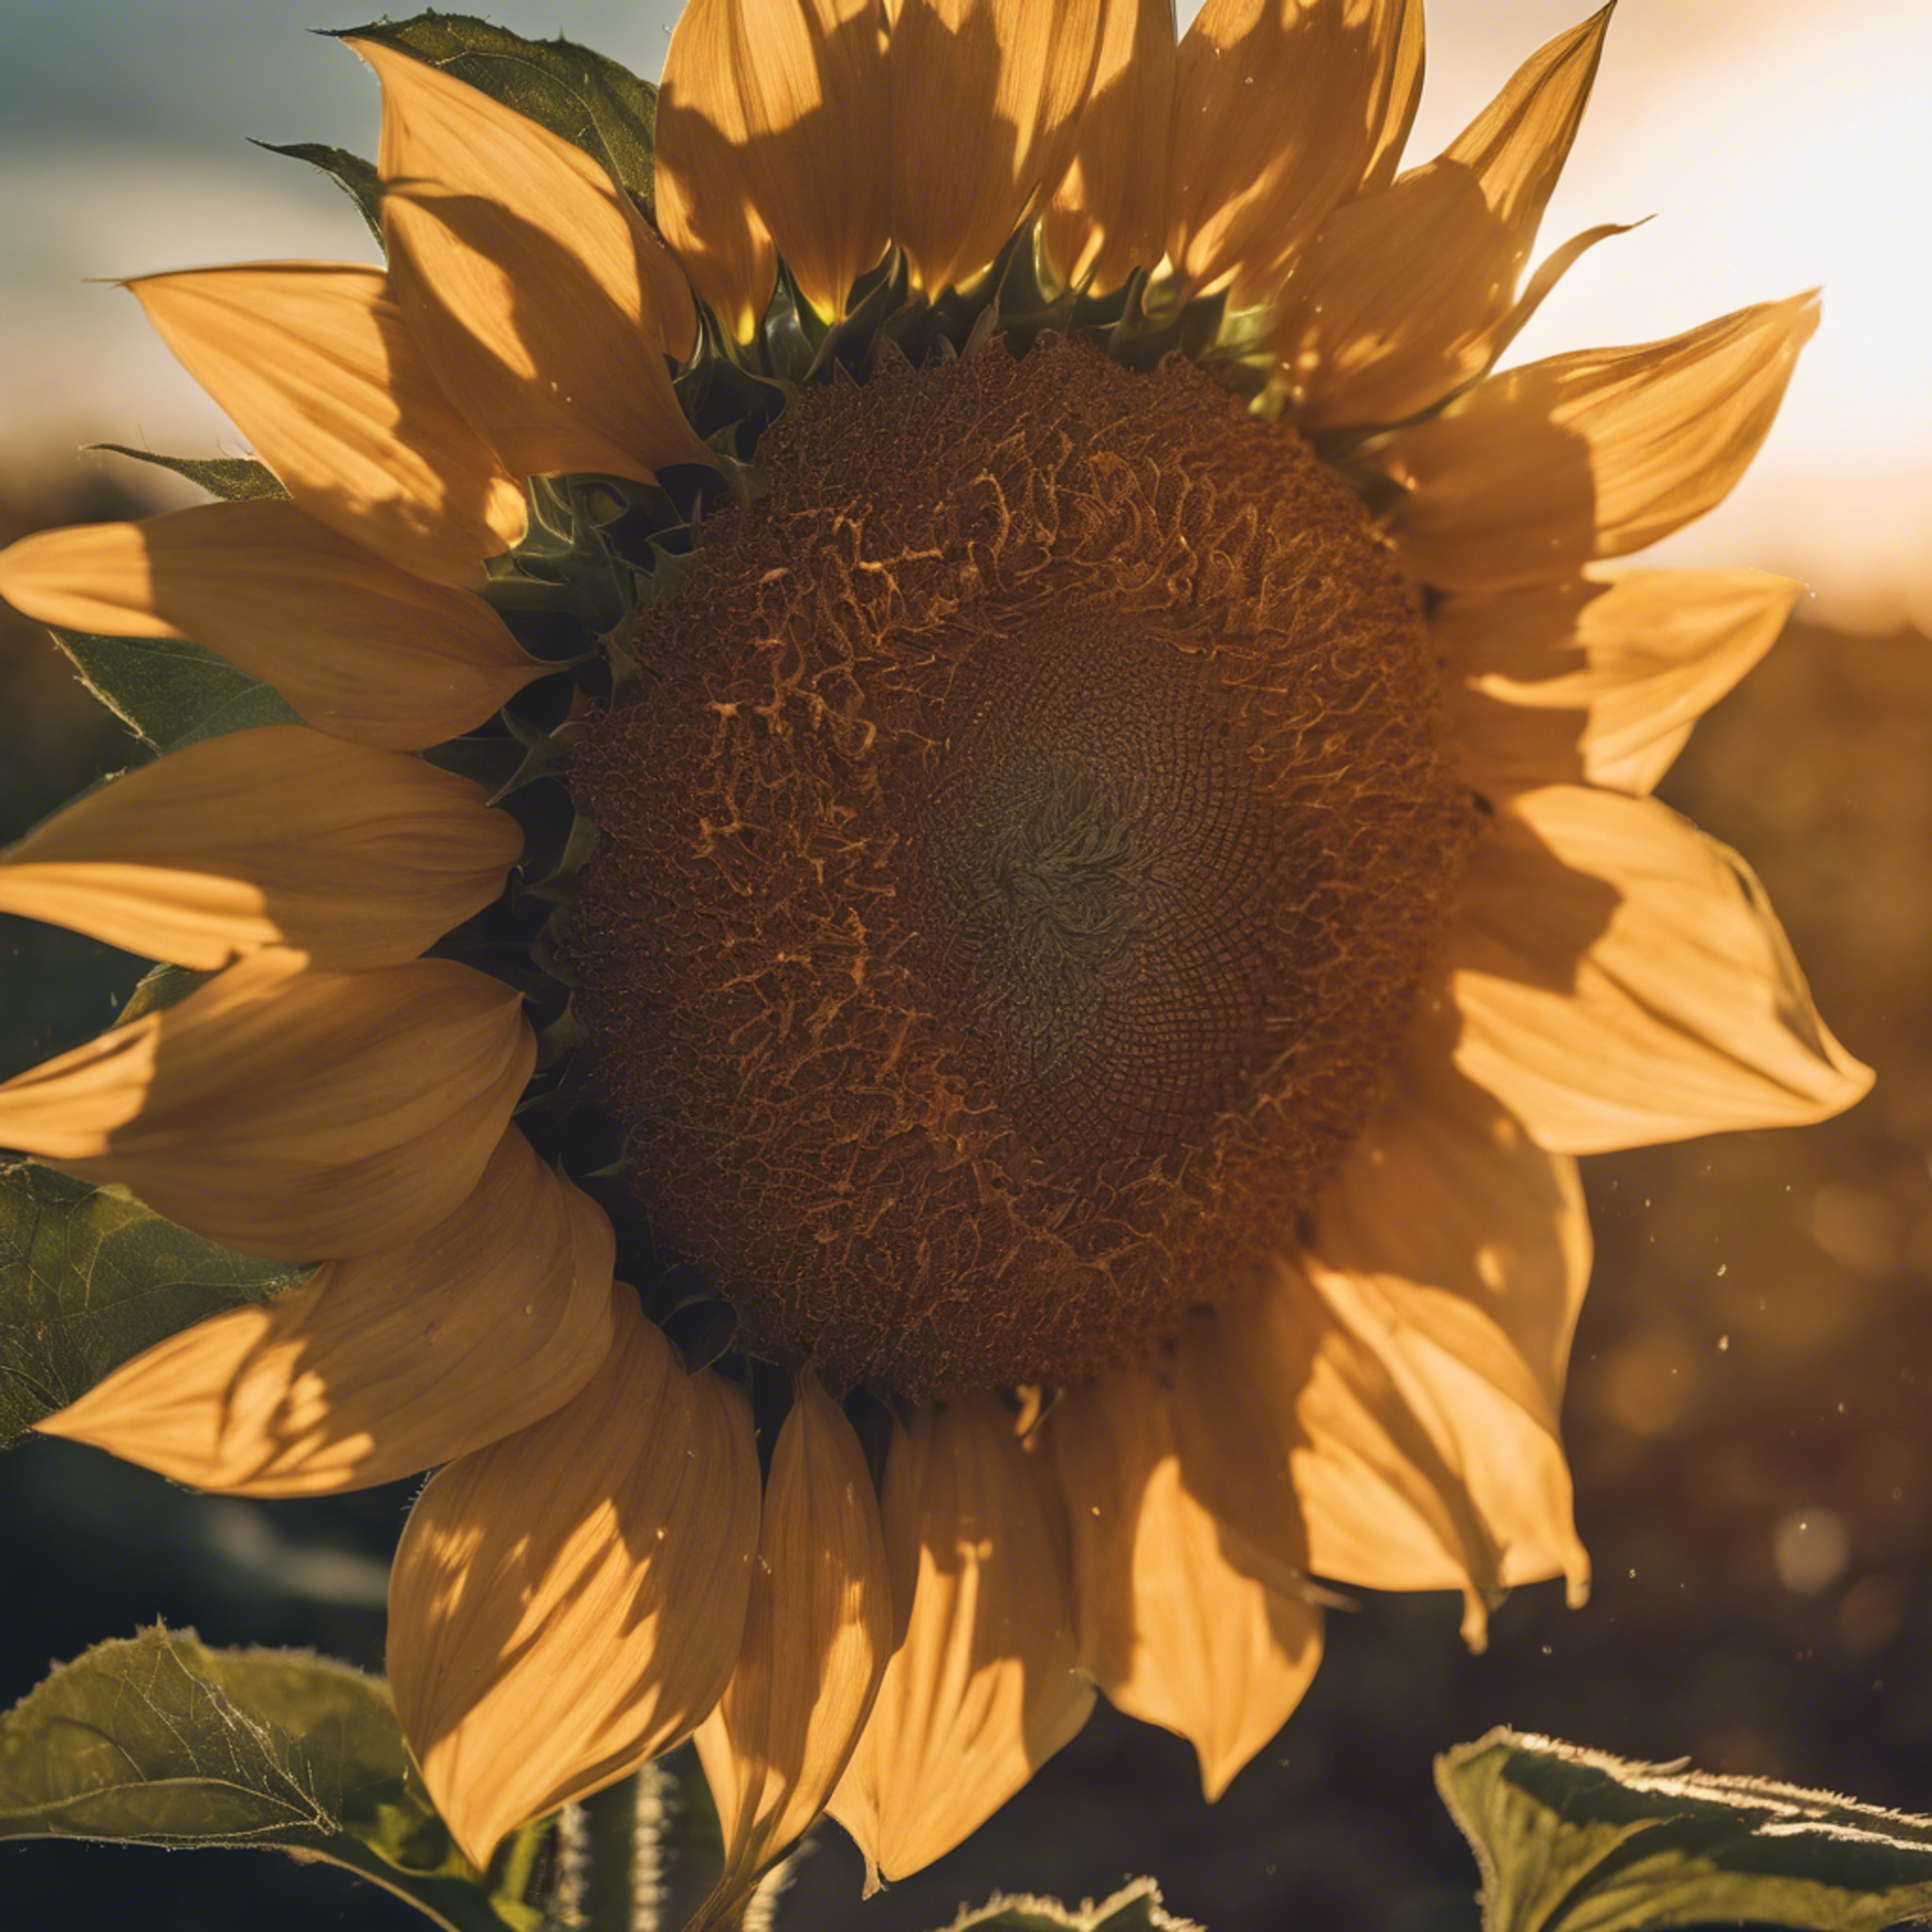 A sunflower facing the sun during a sunset. duvar kağıdı[9b42fe1f279f4e8bae2c]